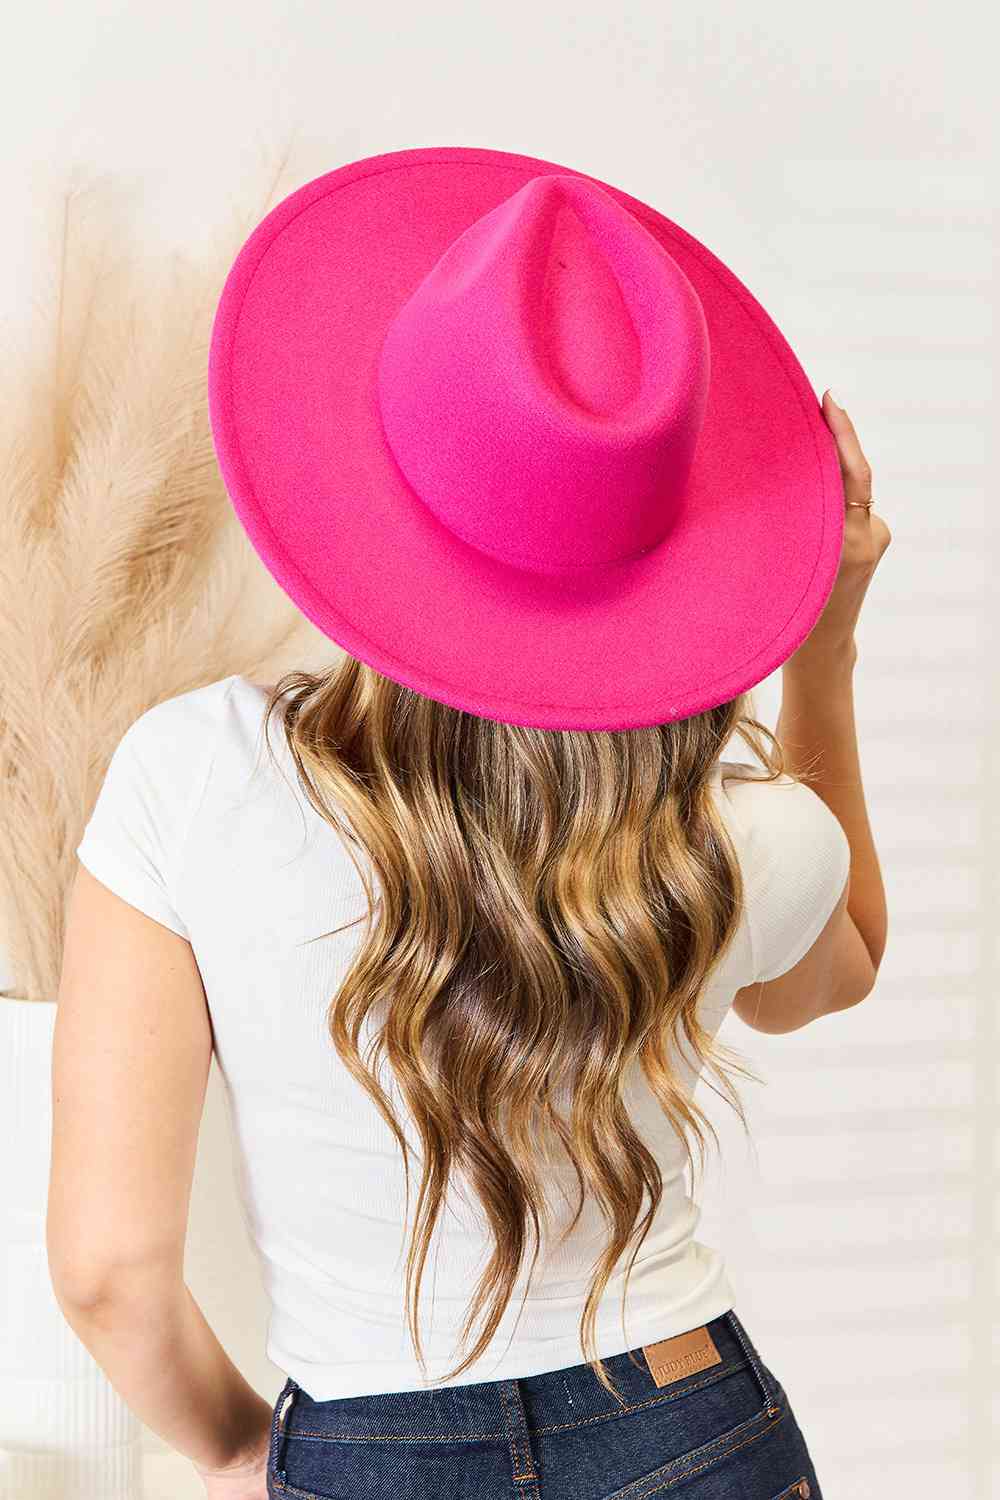 Fame Flat Brim Fedora Fashion Hat in Hot Pink